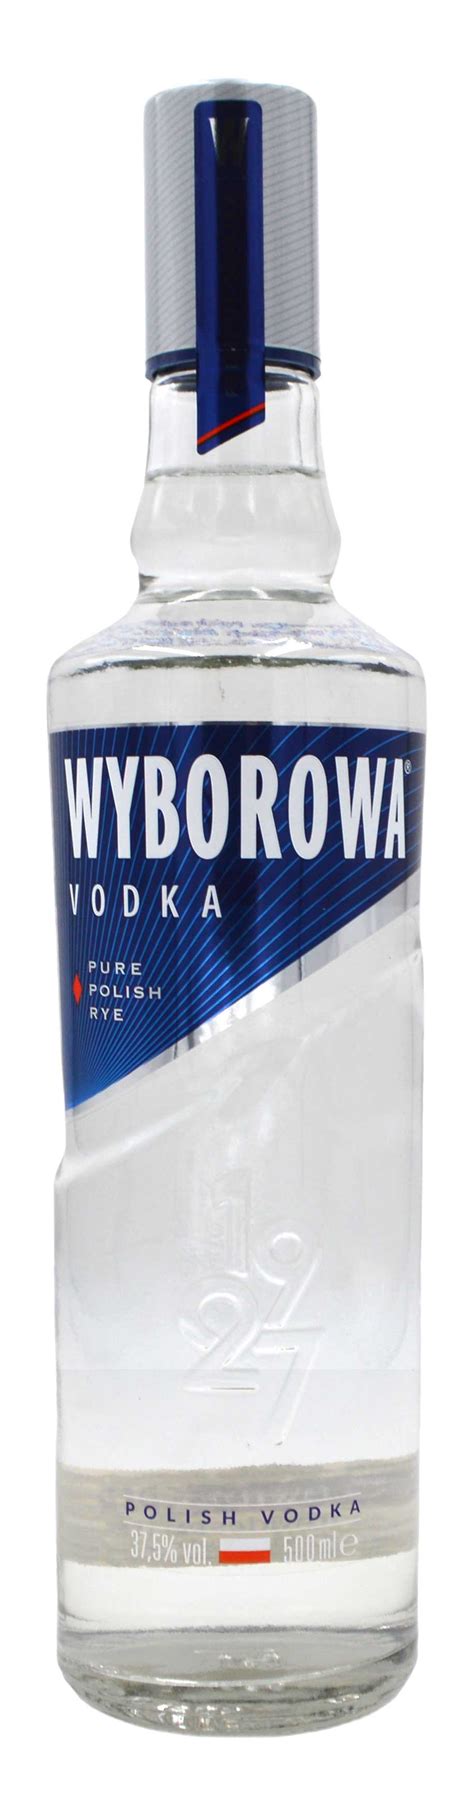 wyborowa wodka  worldwidespirits